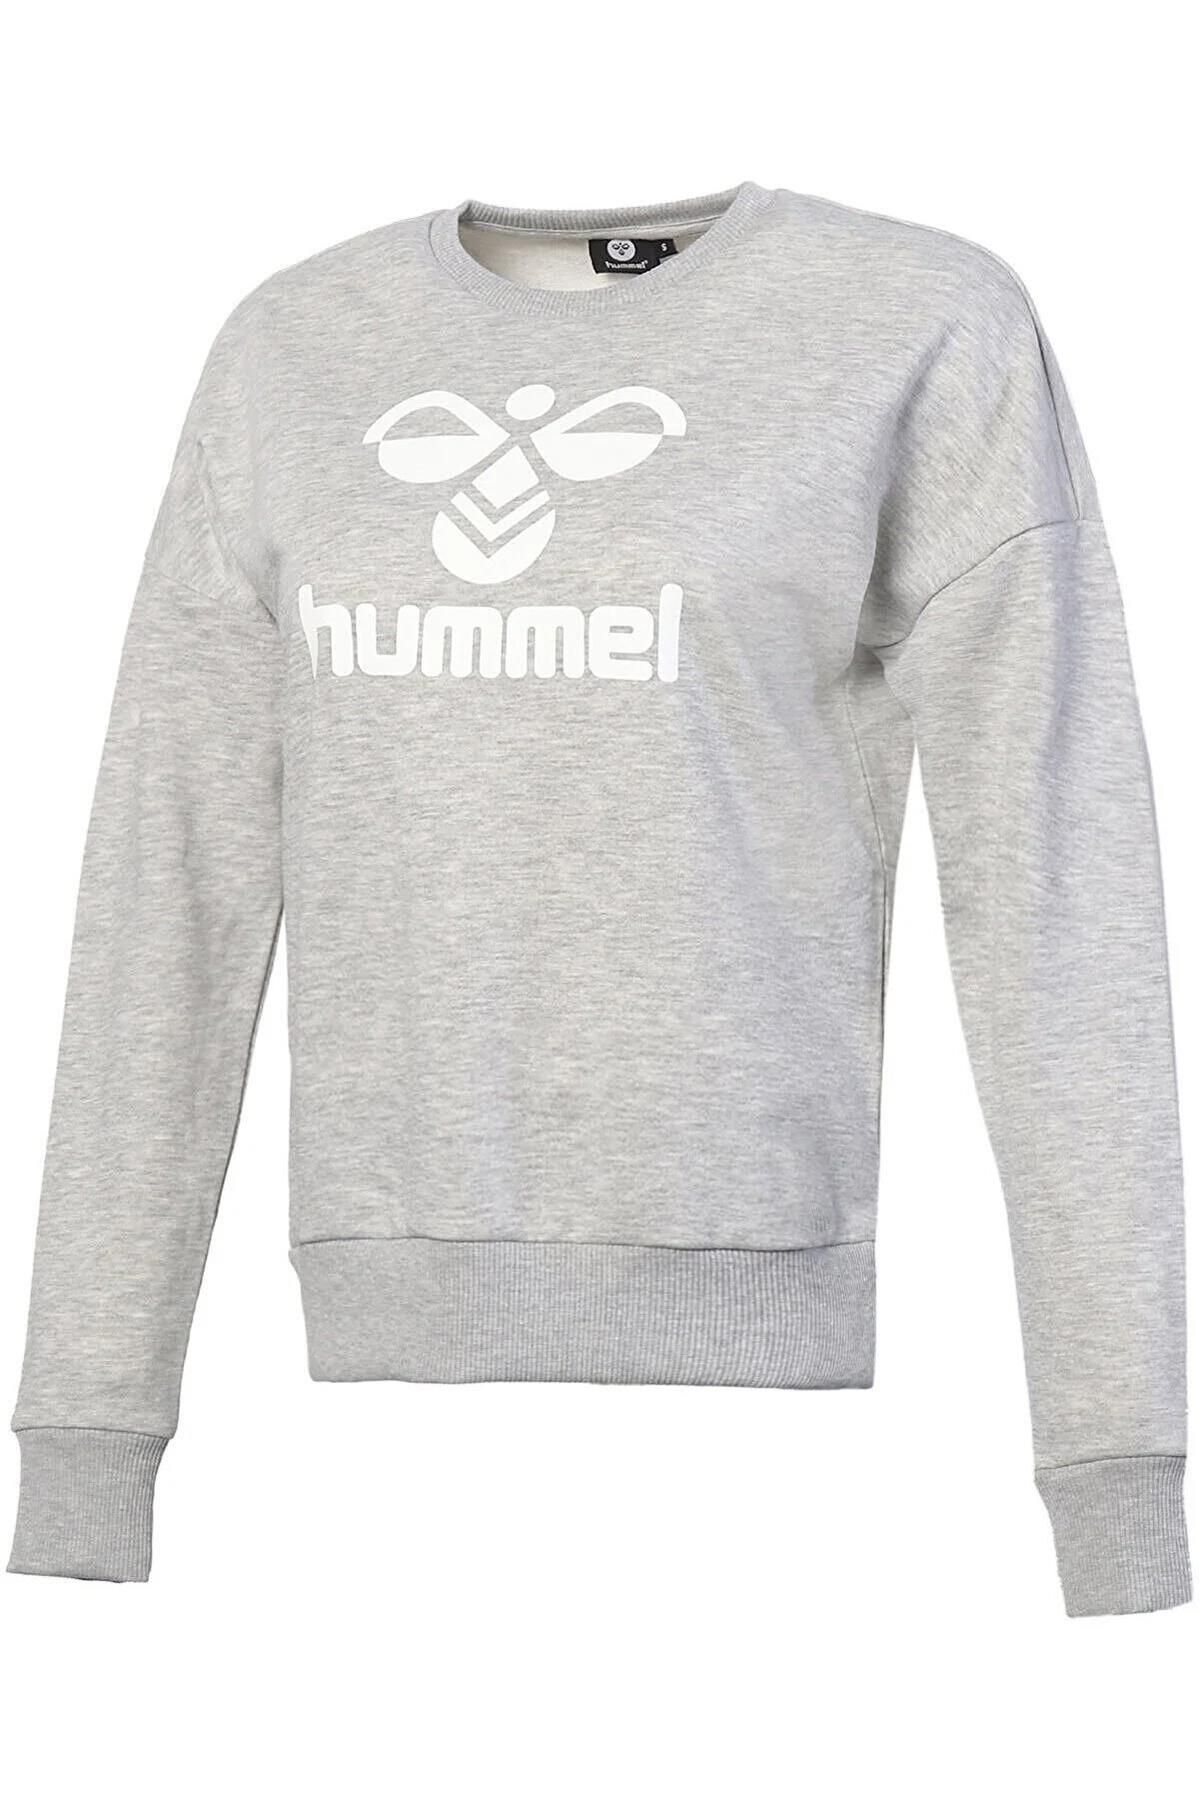 hummel 921461-2010 Helsinge Kadın Spor Ceket